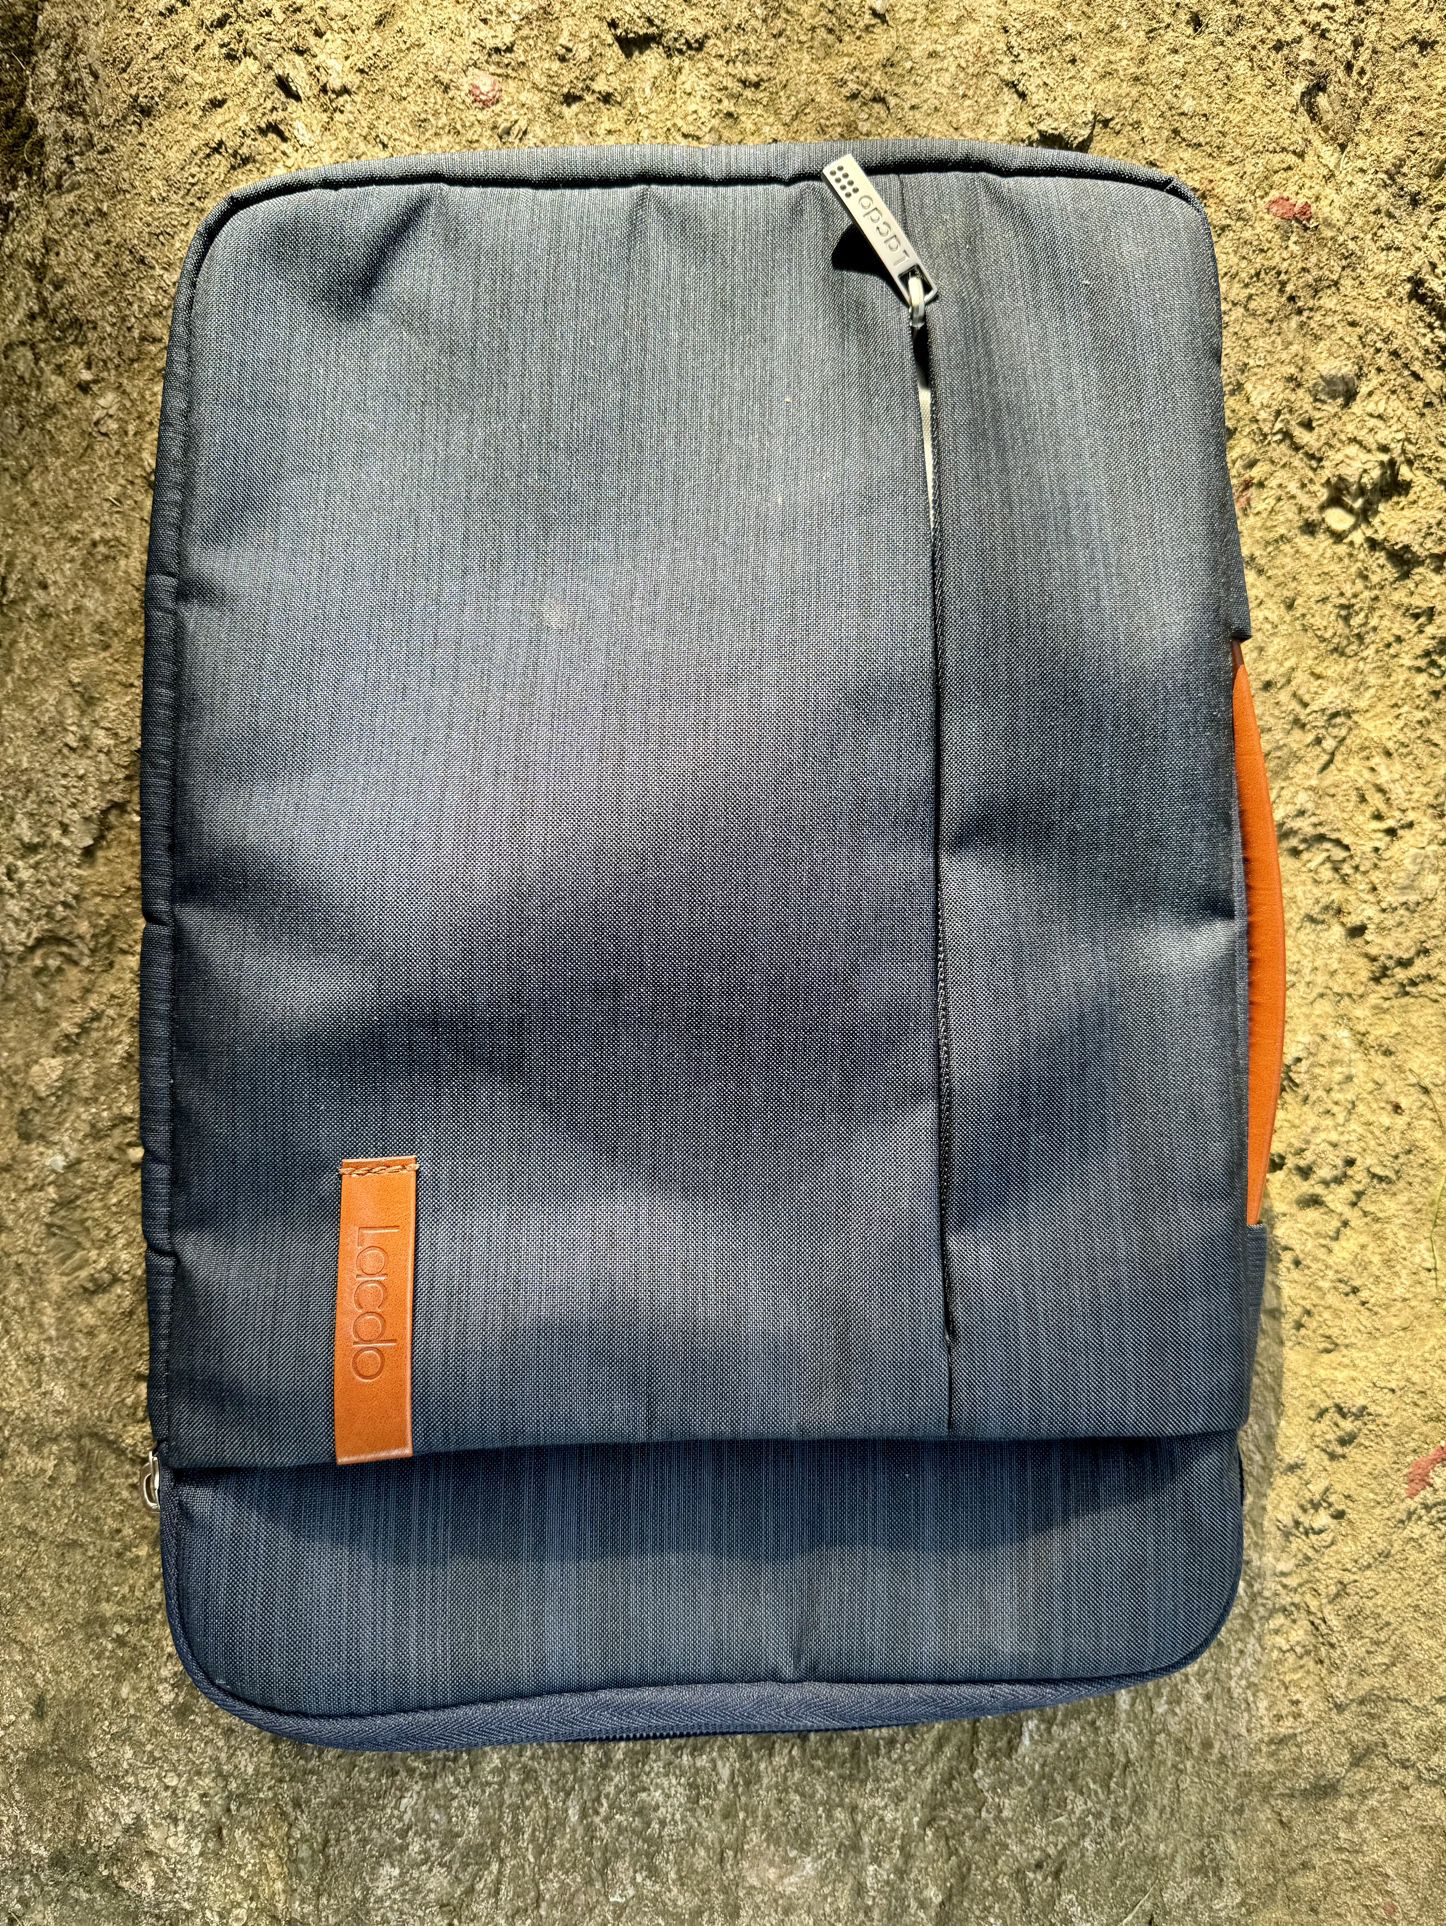 MacBook Carrying Case 13-14”